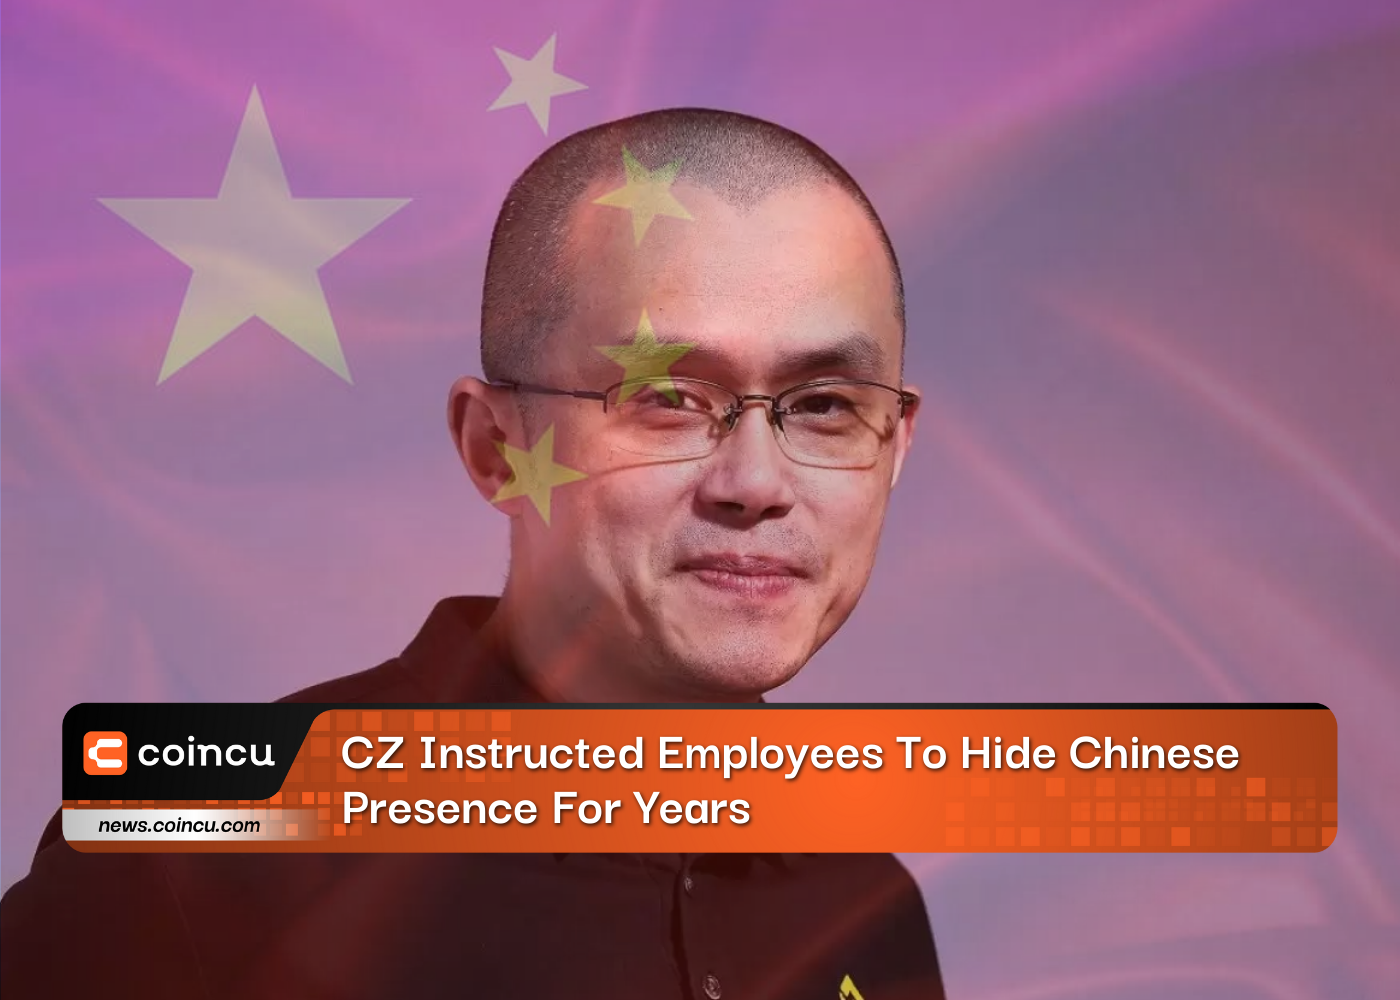 CZ đã hướng dẫn nhân viên che giấu sự hiện diện của người Trung Quốc trong nhiều năm